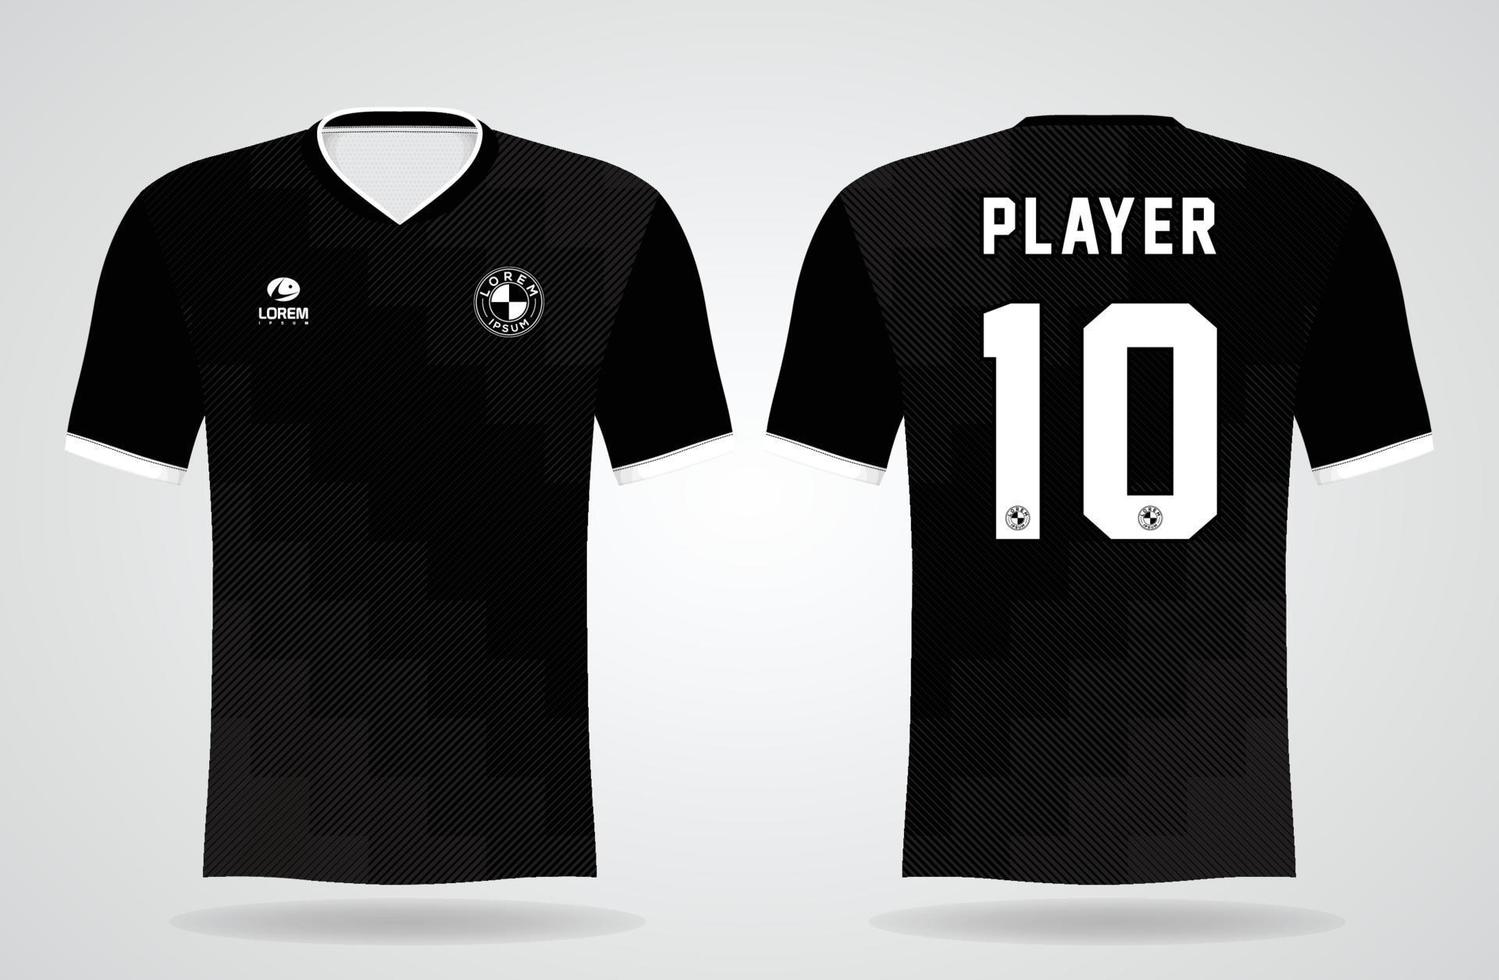 zwart sportshirt sjabloon voor teamuniformen en voetbal t-shirtontwerp vector